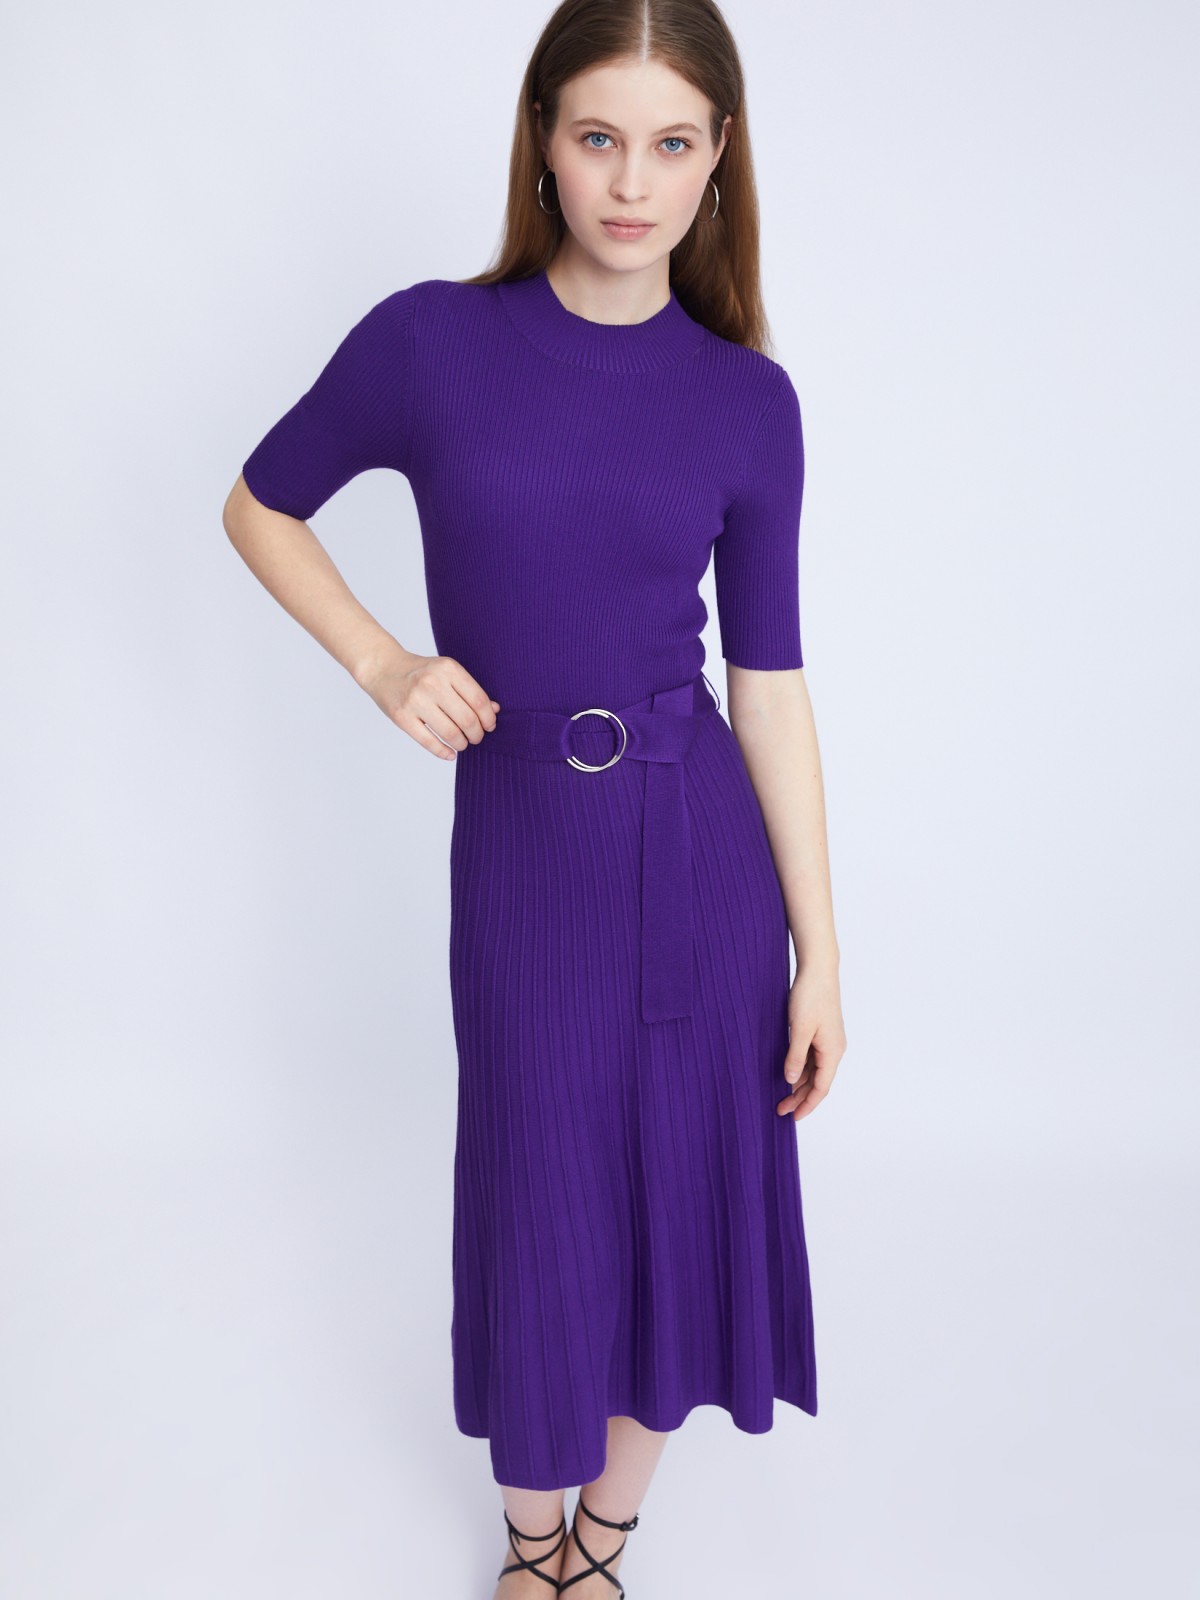 Платье вязаное zolla 223338443013, цвет сливовый, размер XL - фото 1